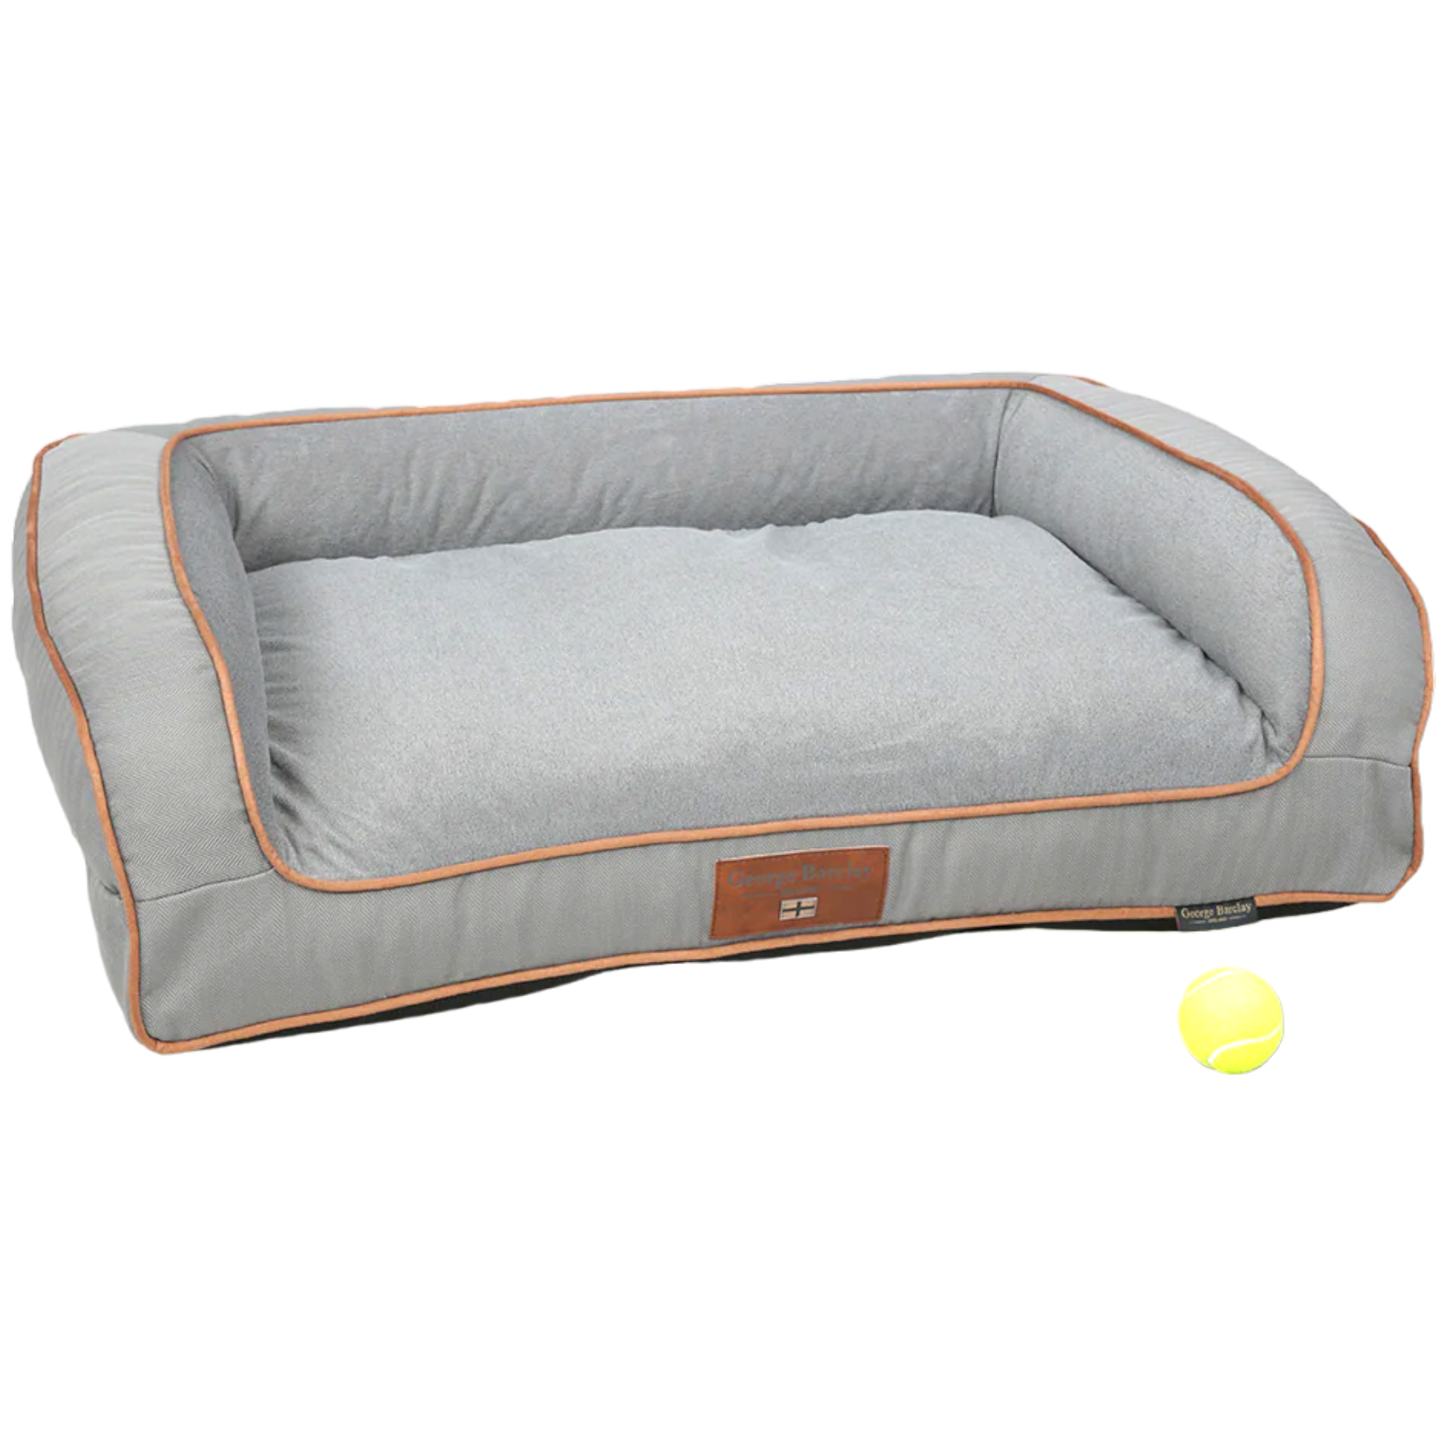 George Barclay Savile Dog Sofa Bed - Mason's Grey